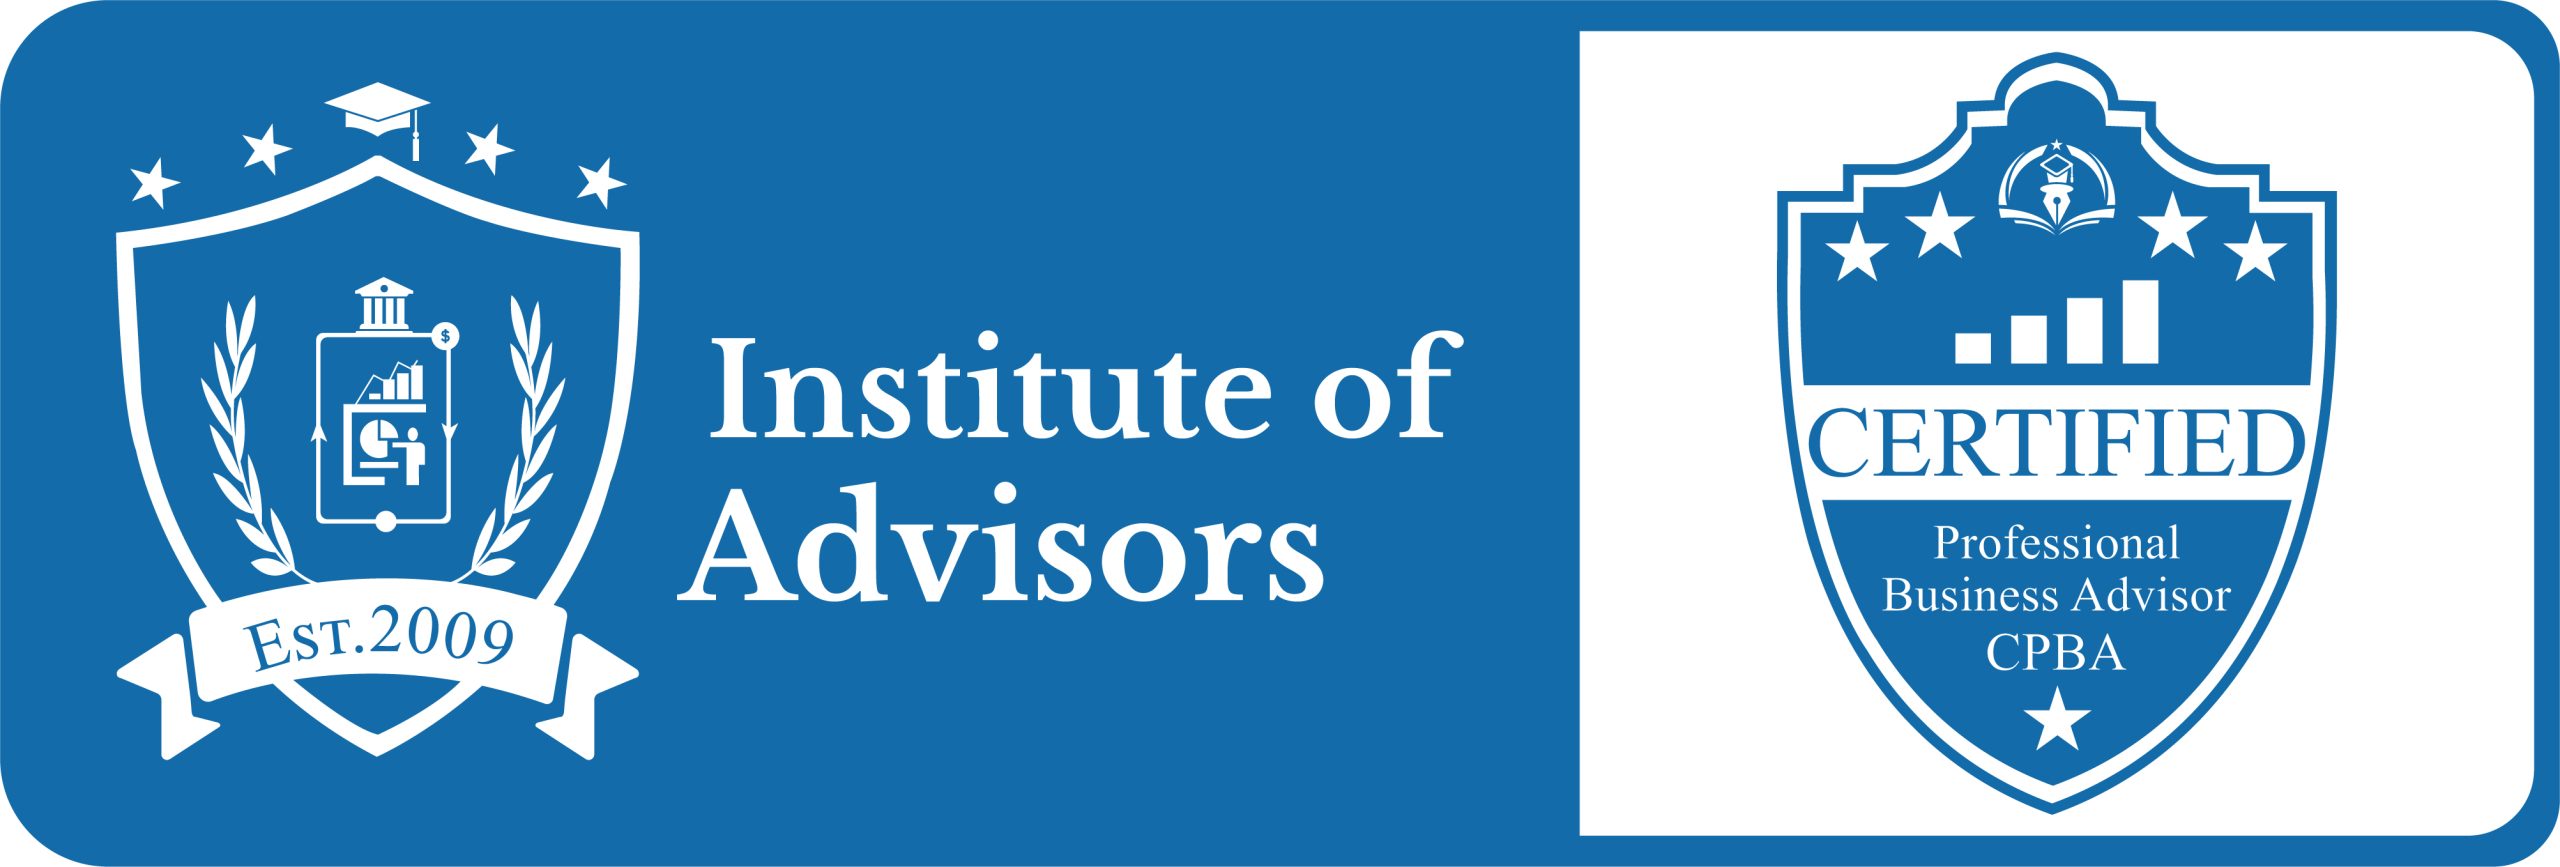 Institute Of Advisors - Certified Advisor